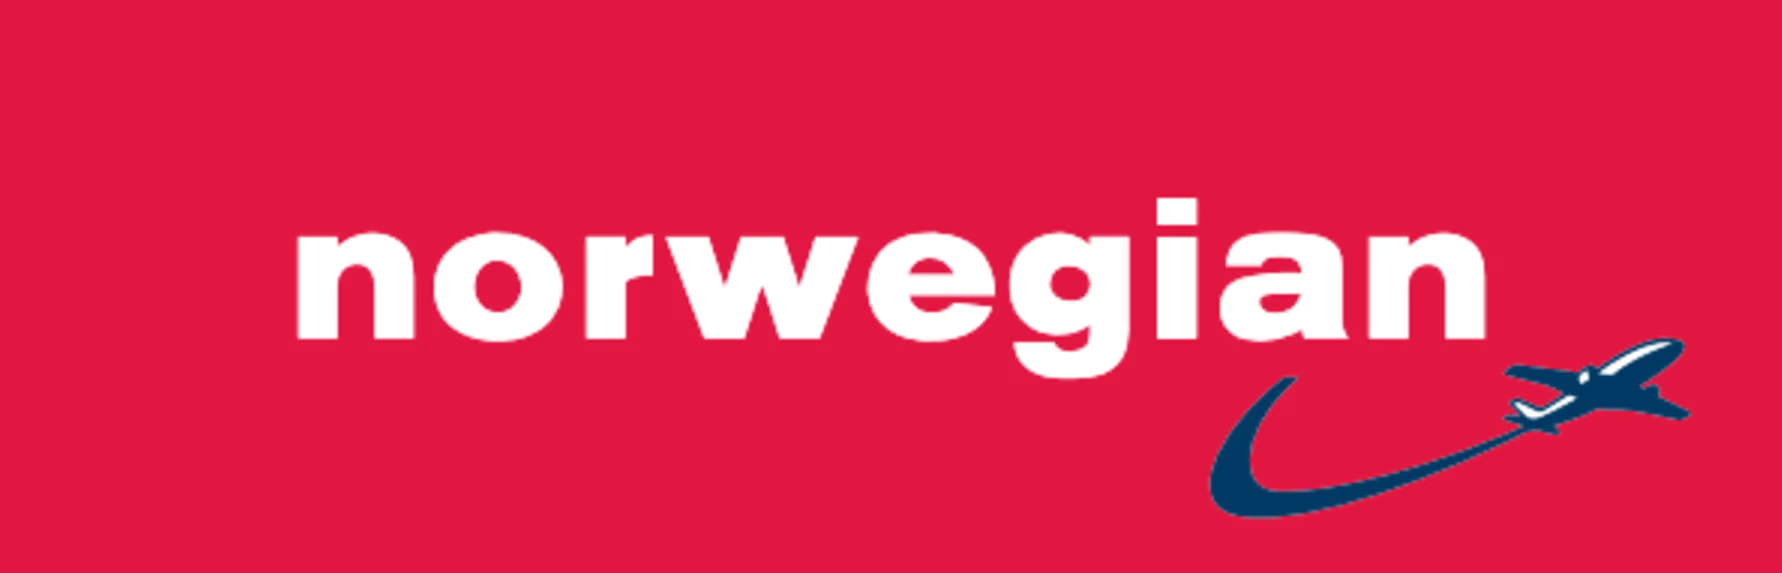 Norwegian logo.jpeg